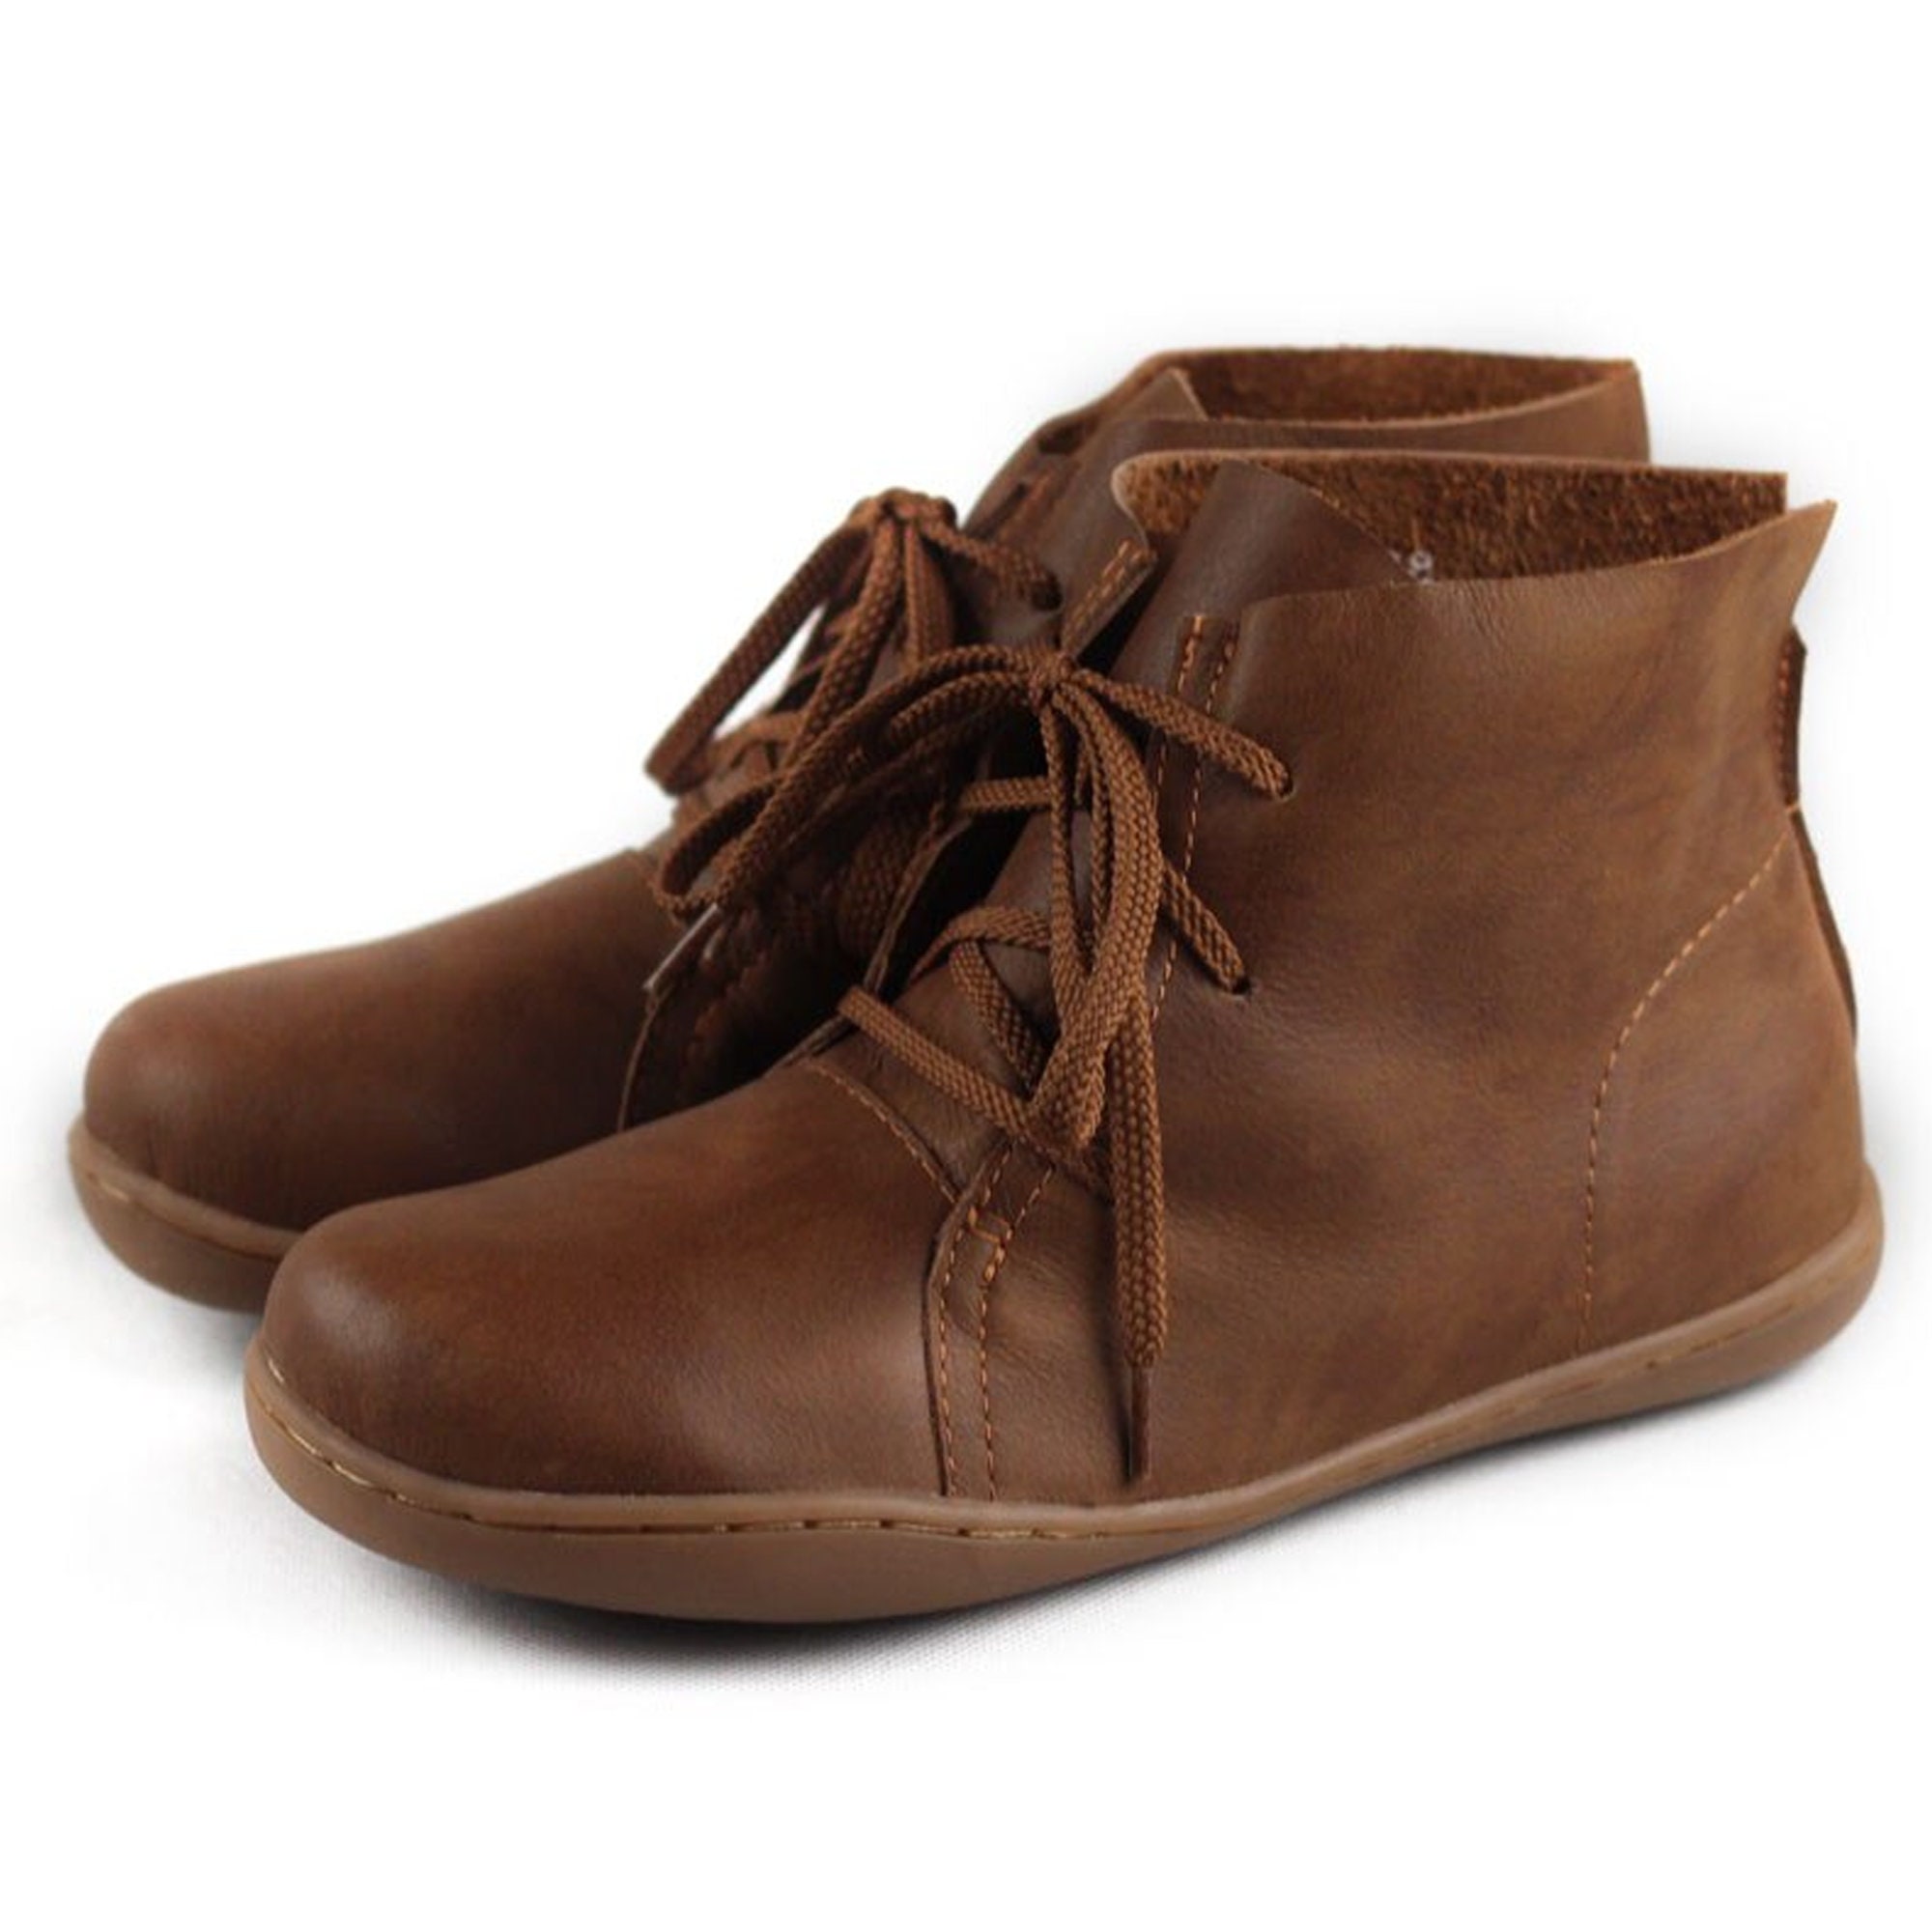 Ankle Boots Boots Schoenen damesschoenen Laarzen Enkellaarsjes Leather Boots Leather Ankle Boots Boho Boots 